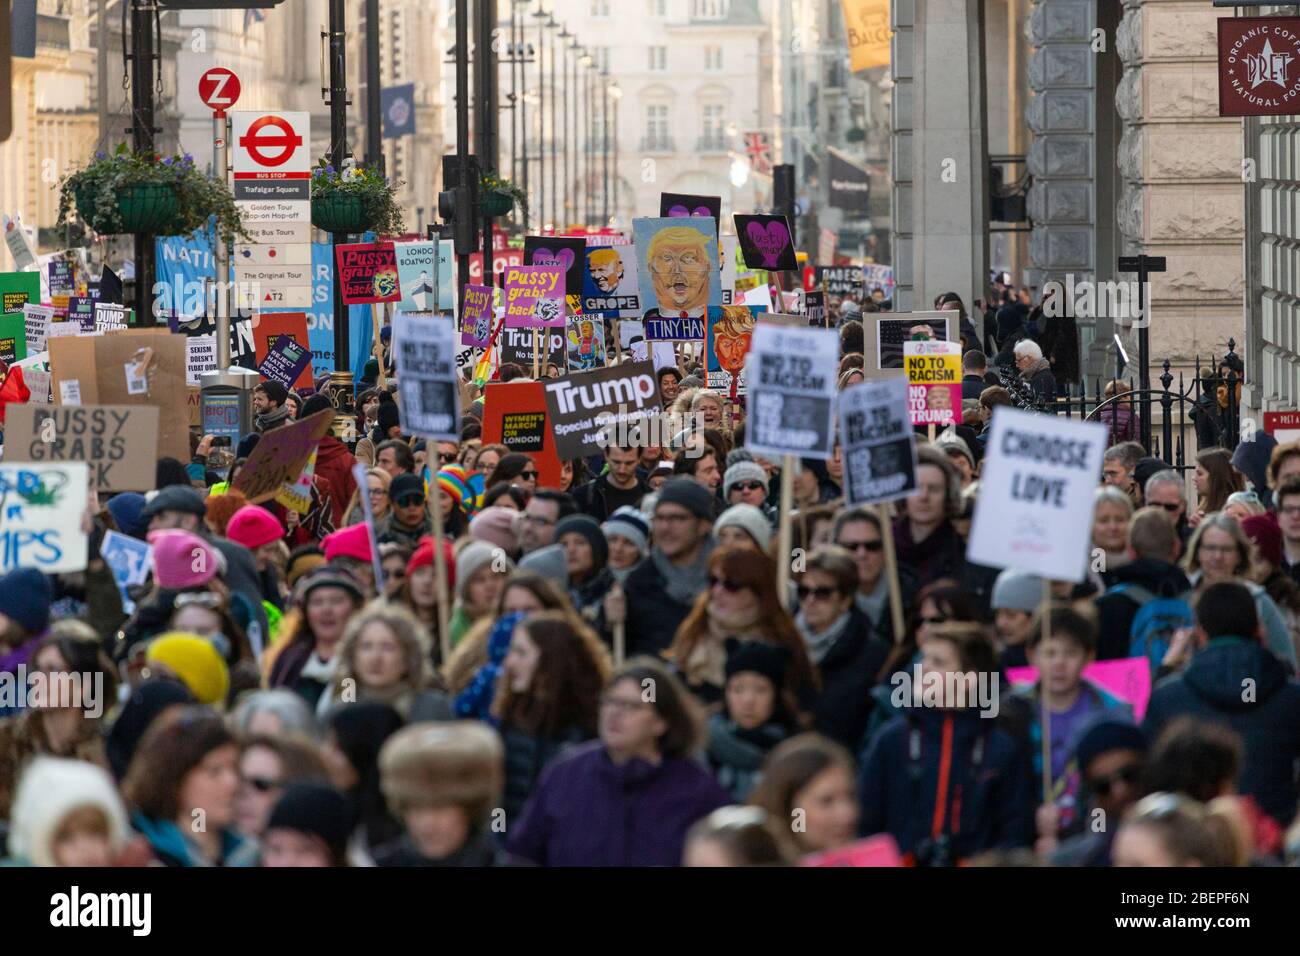 Vue de la foule et signes de protestation à la Marche des femmes de 2017, Londres Banque D'Images